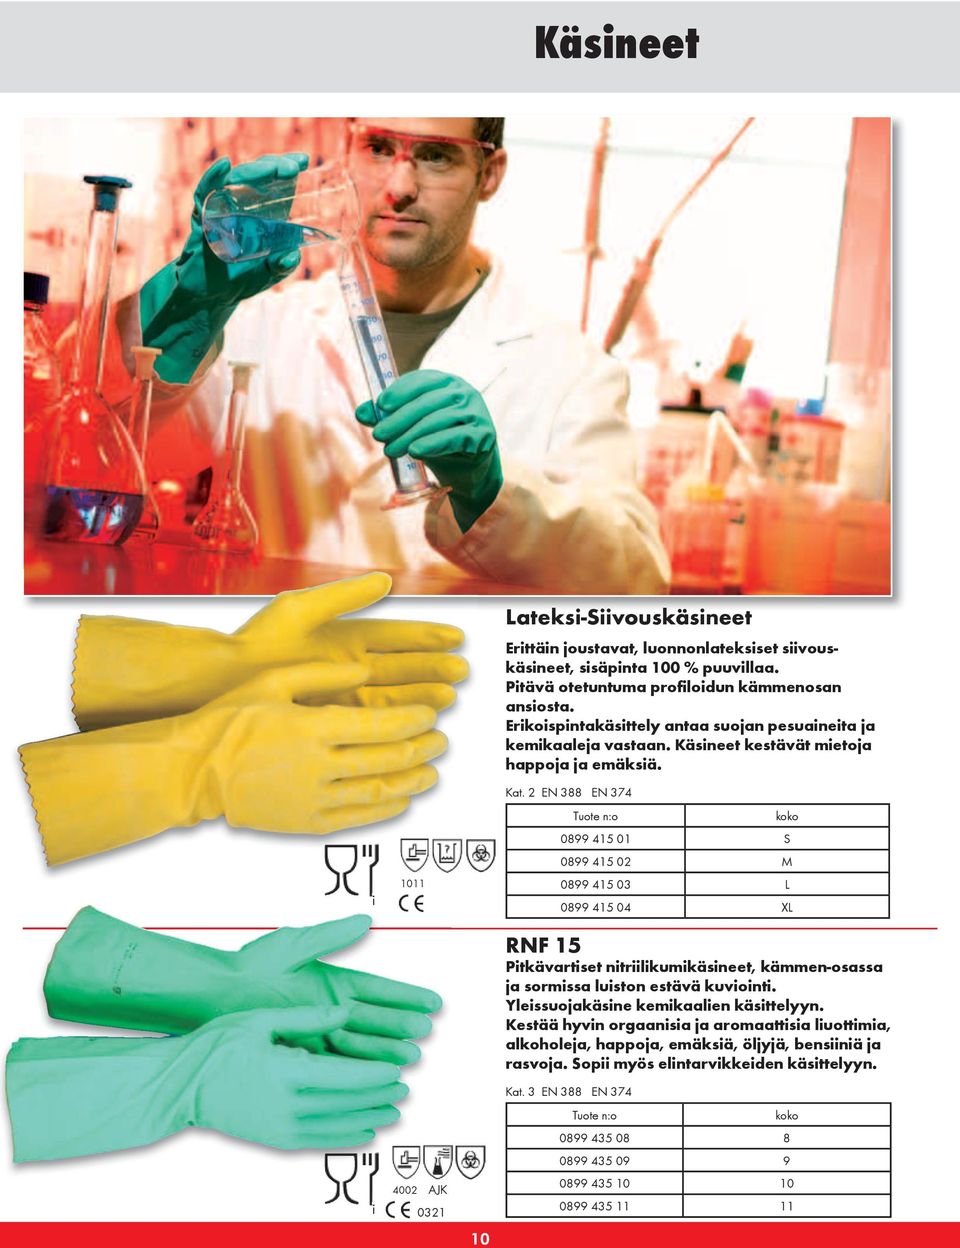 2 EN 388 EN 374 RNF 15 Pitkävartiset nitriilikumikäsineet, kämmen-osassa ja sormissa luiston estävä kuviointi. Yleissuojakäsine kemikaalien käsittelyyn.